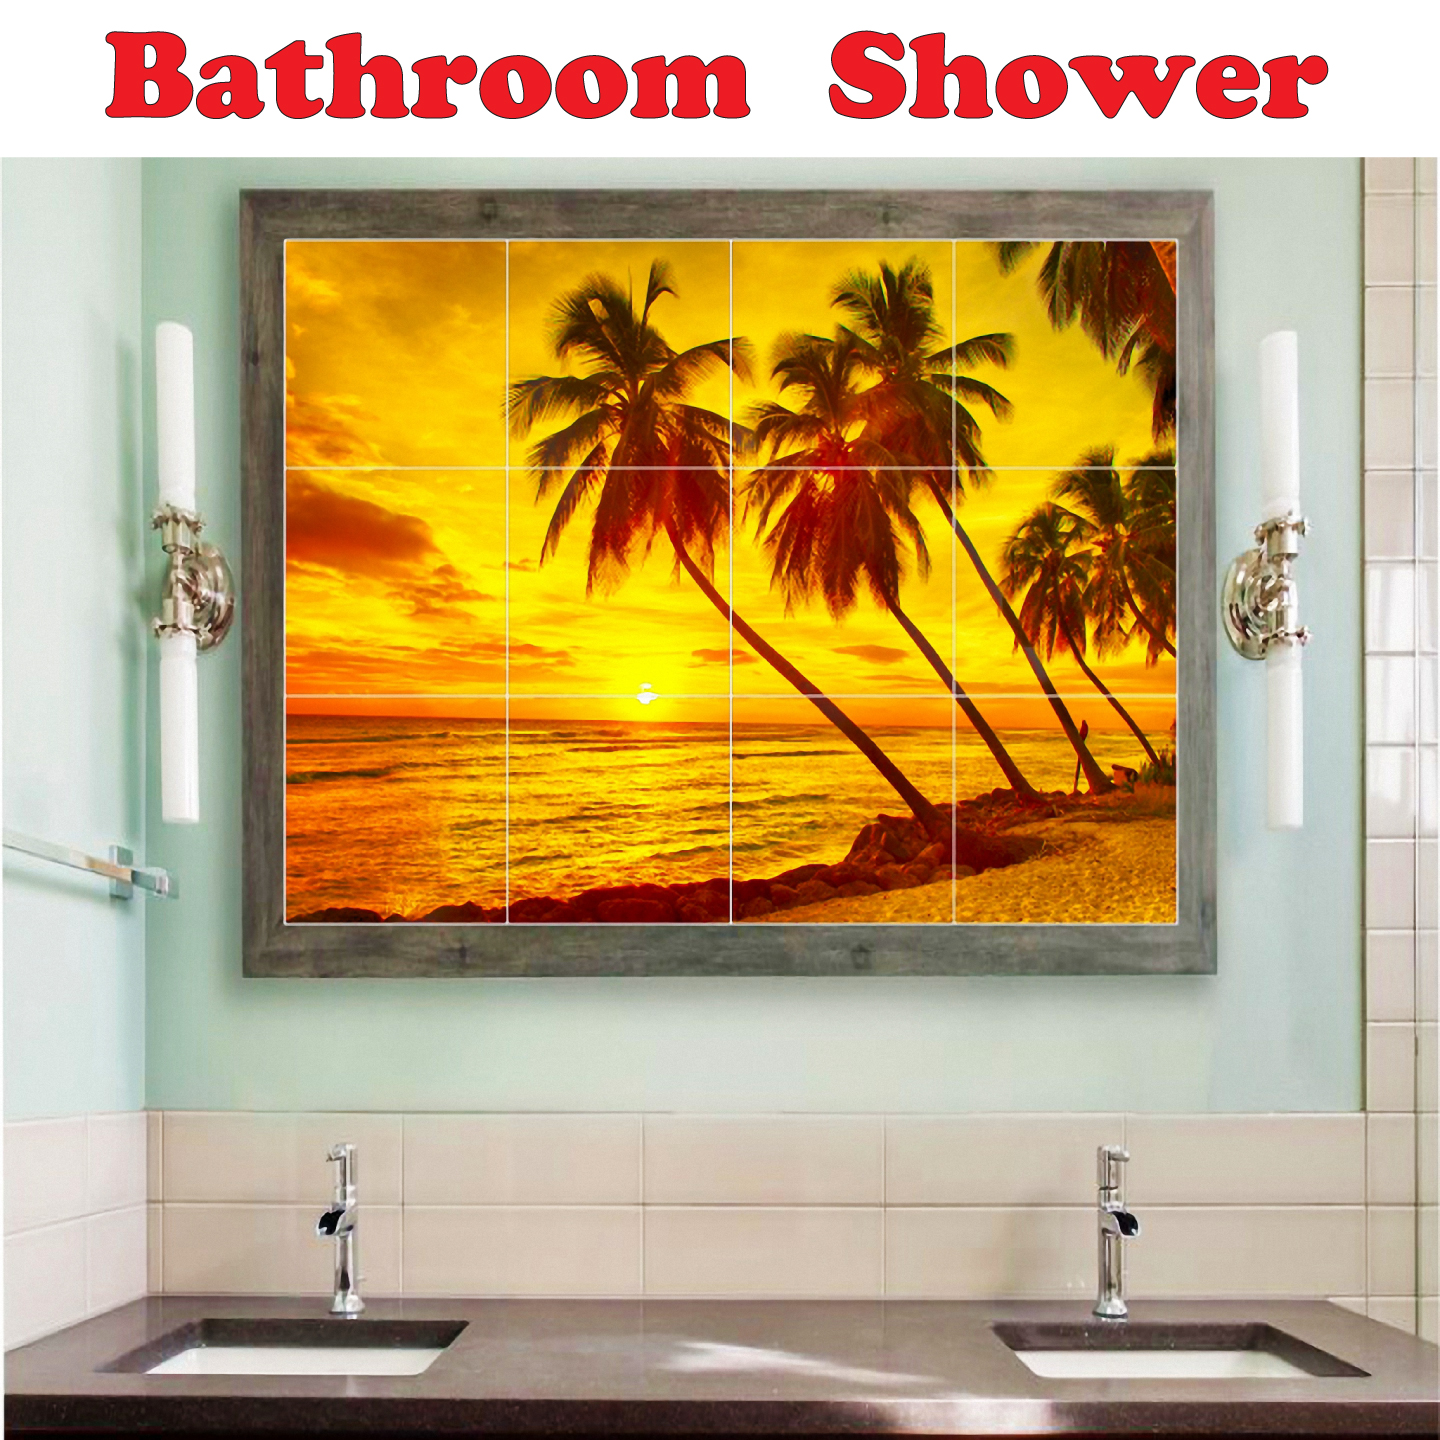 Dolphin Ceramic Tile Mural Kitchen Backsplash Bathroom Shower, 402808-XL64 - image 3 of 3